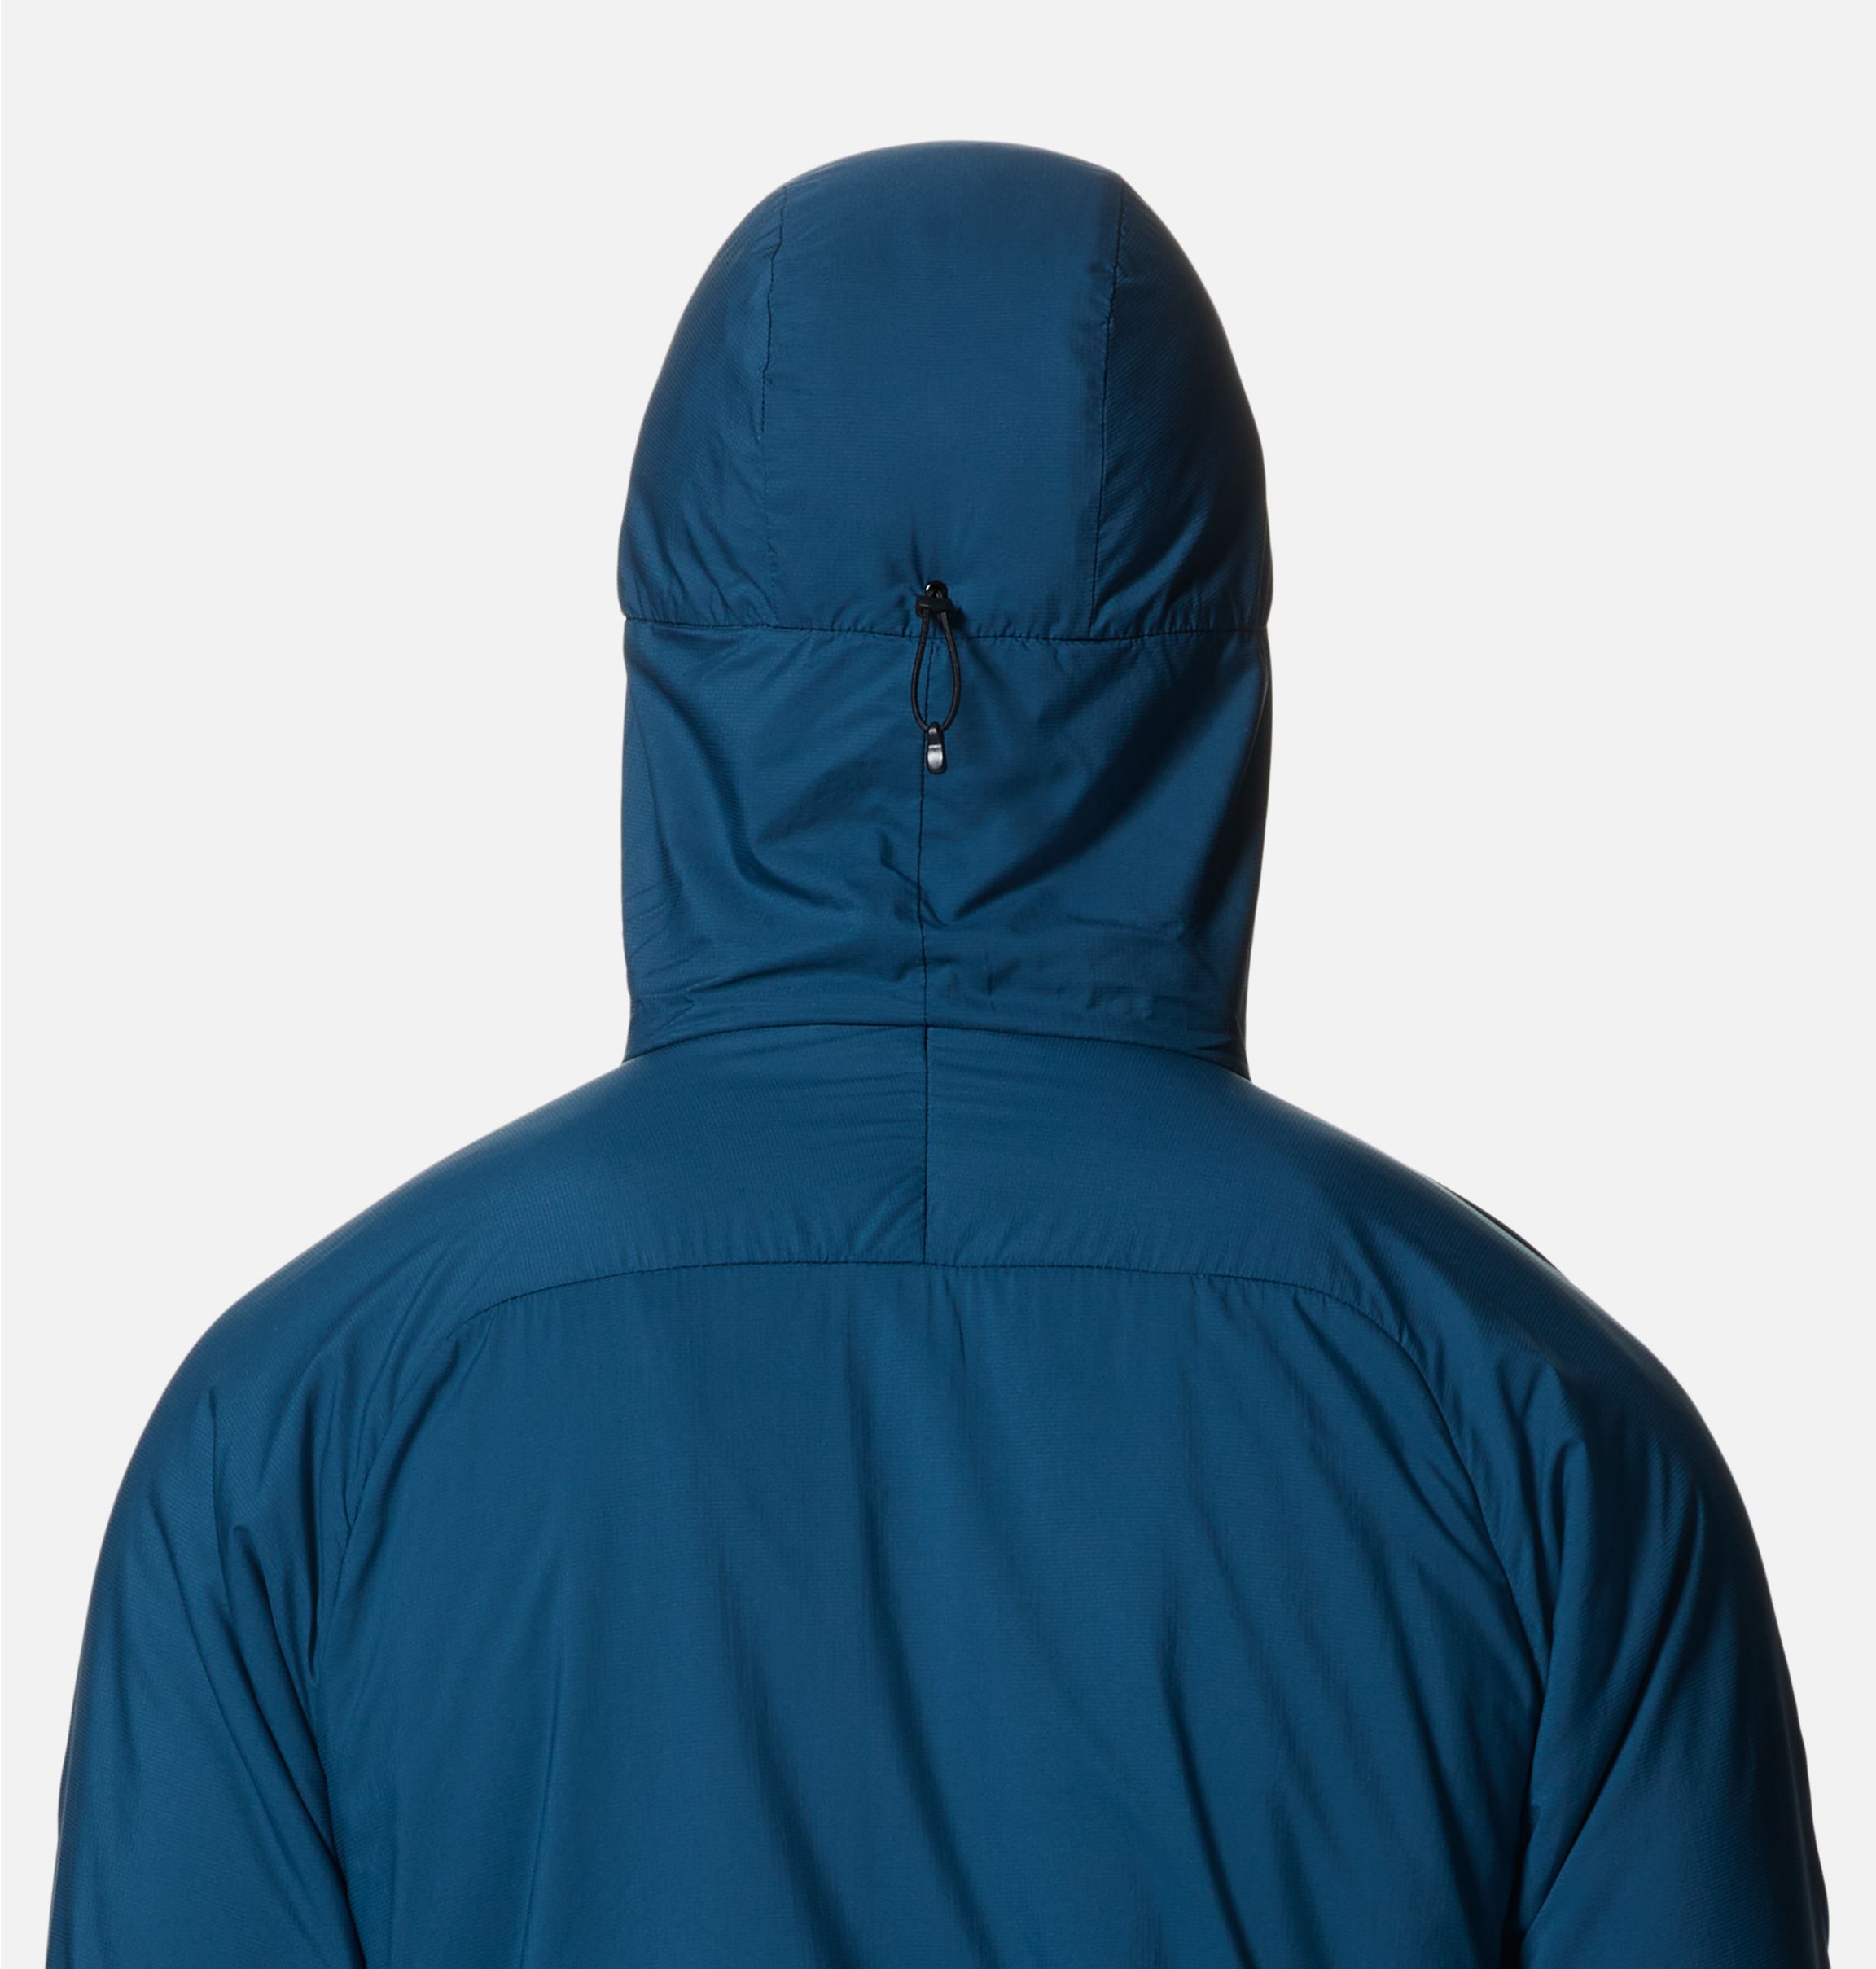 Men's Kor AirShell™ Warm Jacket | Mountain Hardwear